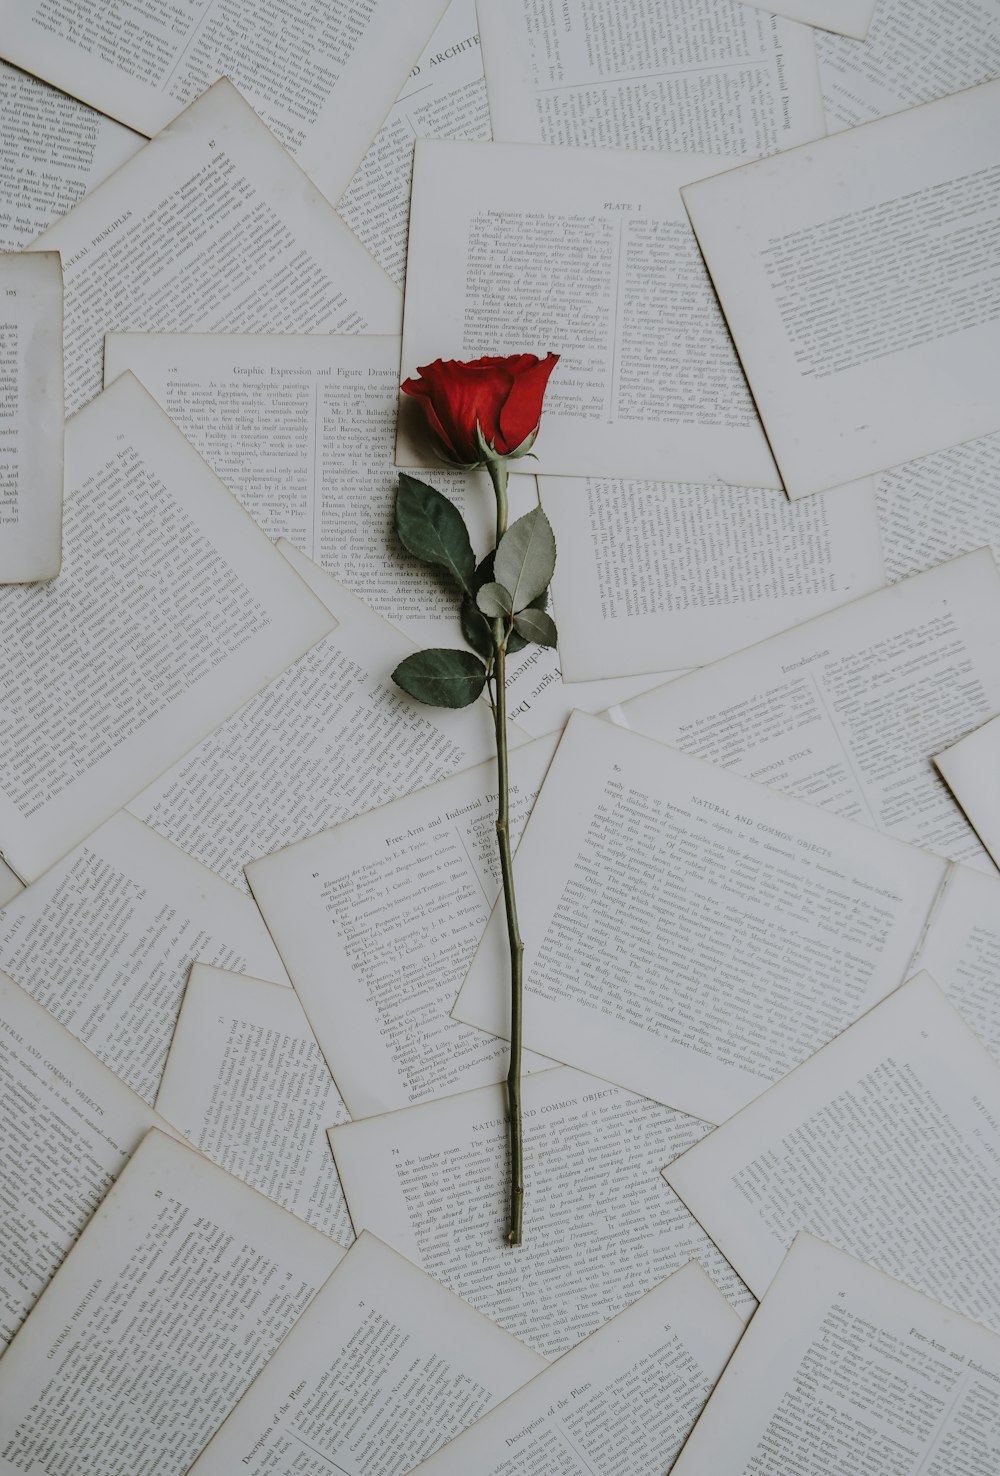 rosa vermelha em folhas de livro